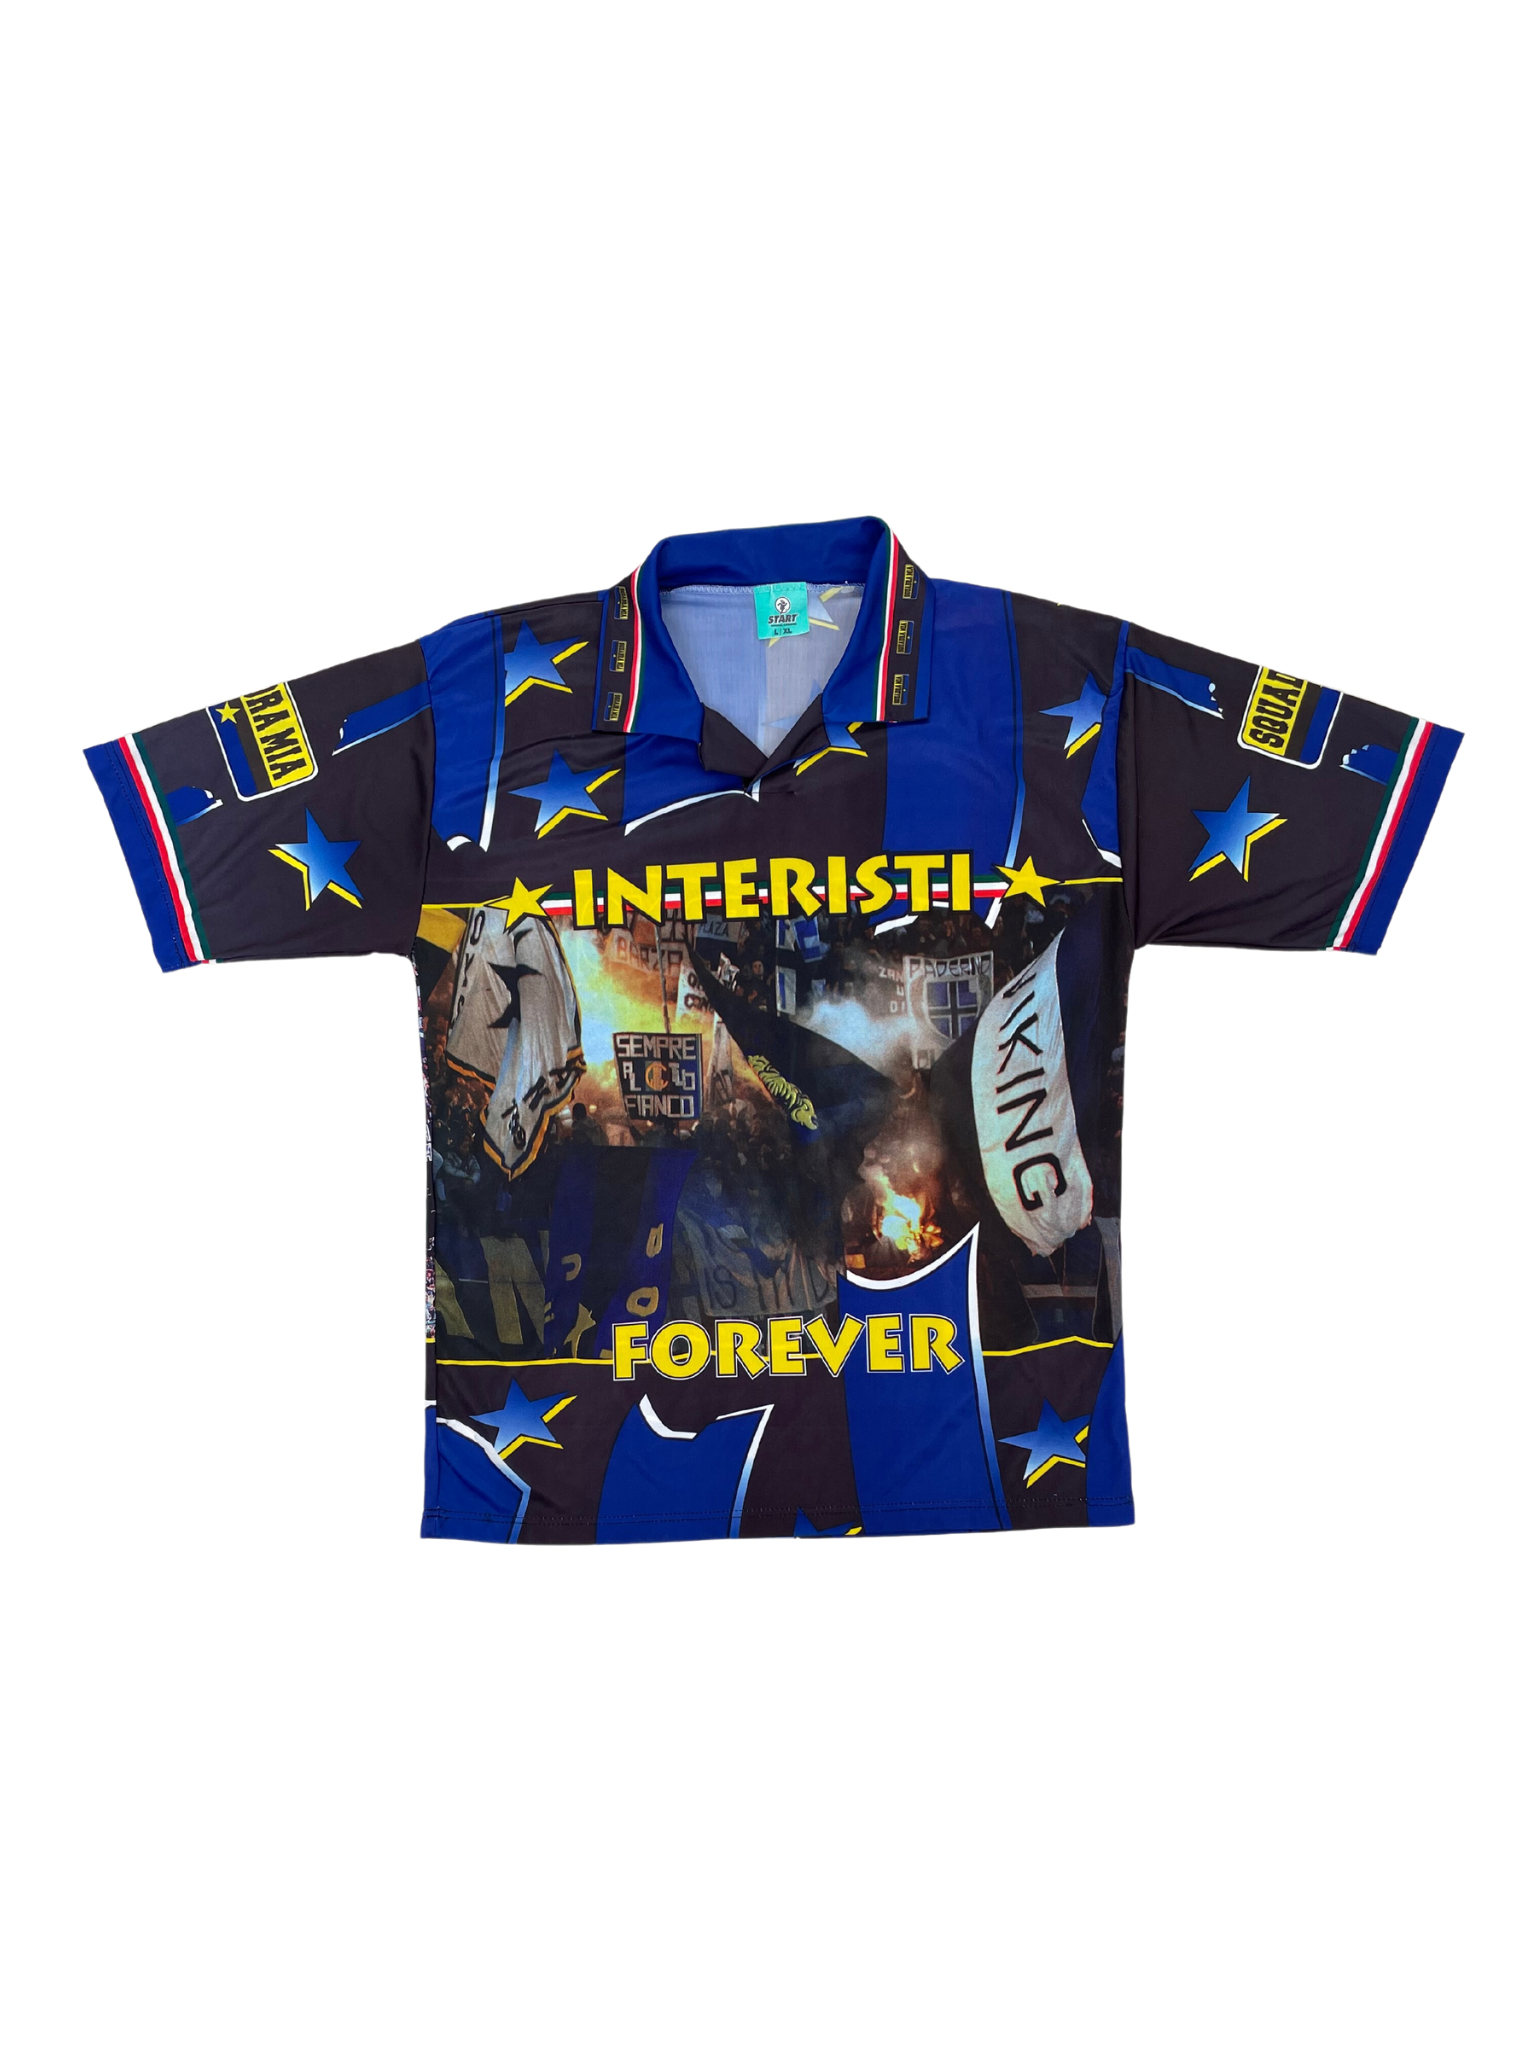 Inter fan shirt